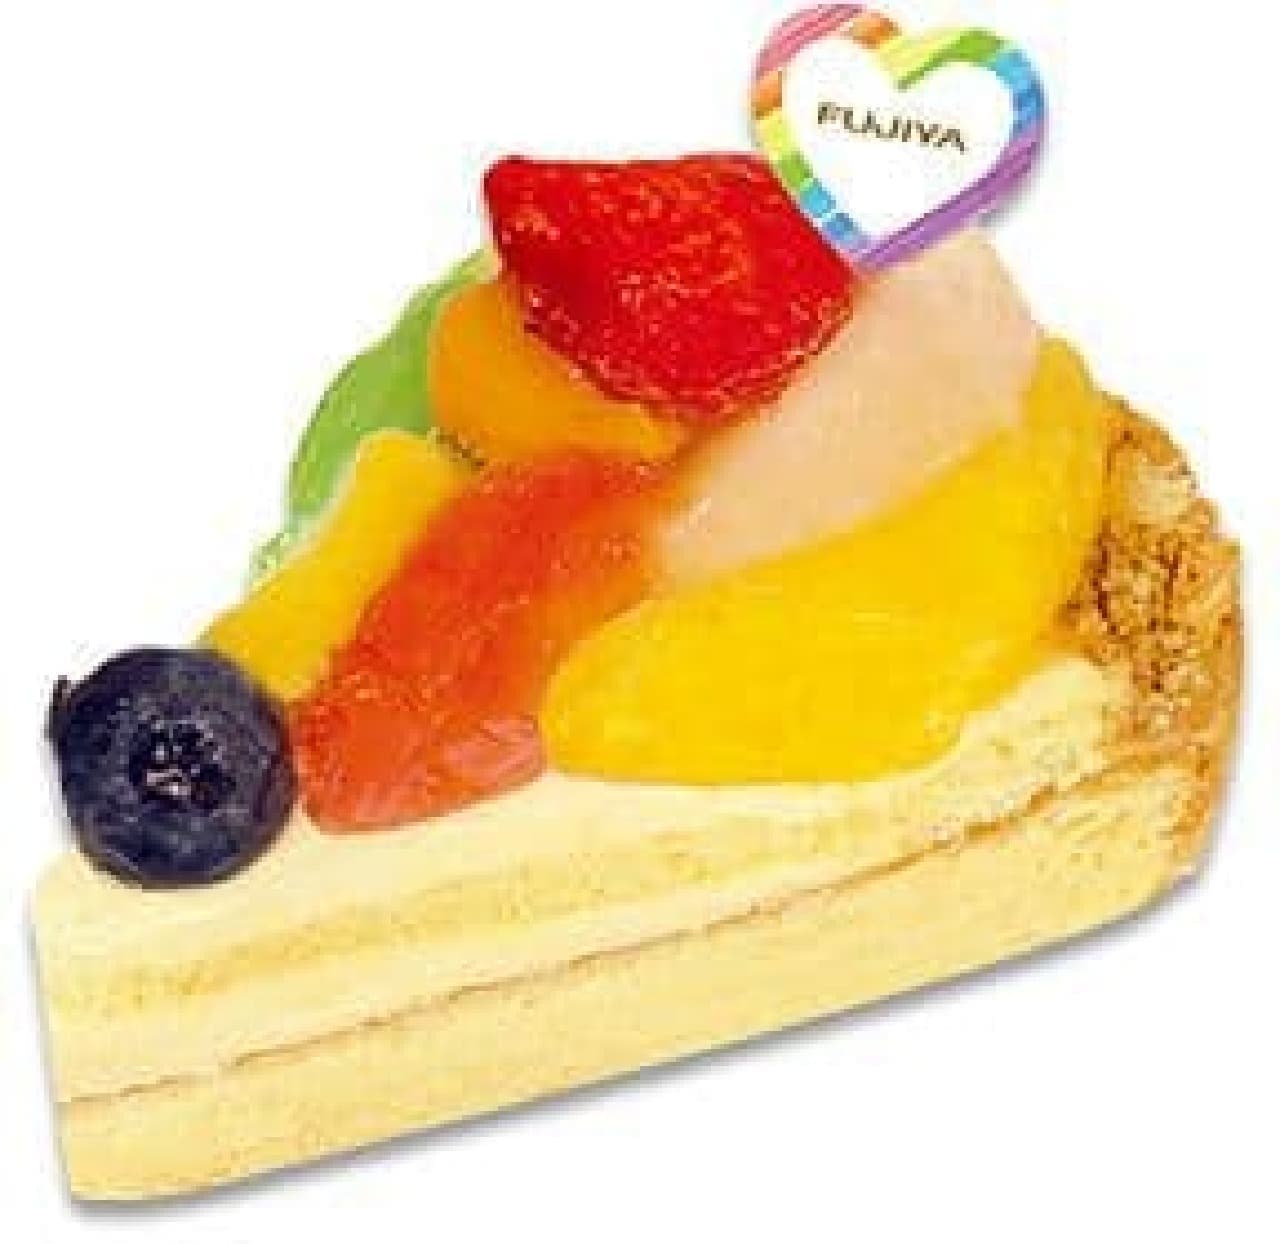 Fujiya pastry shop "Nijiiro Fruit Tart"